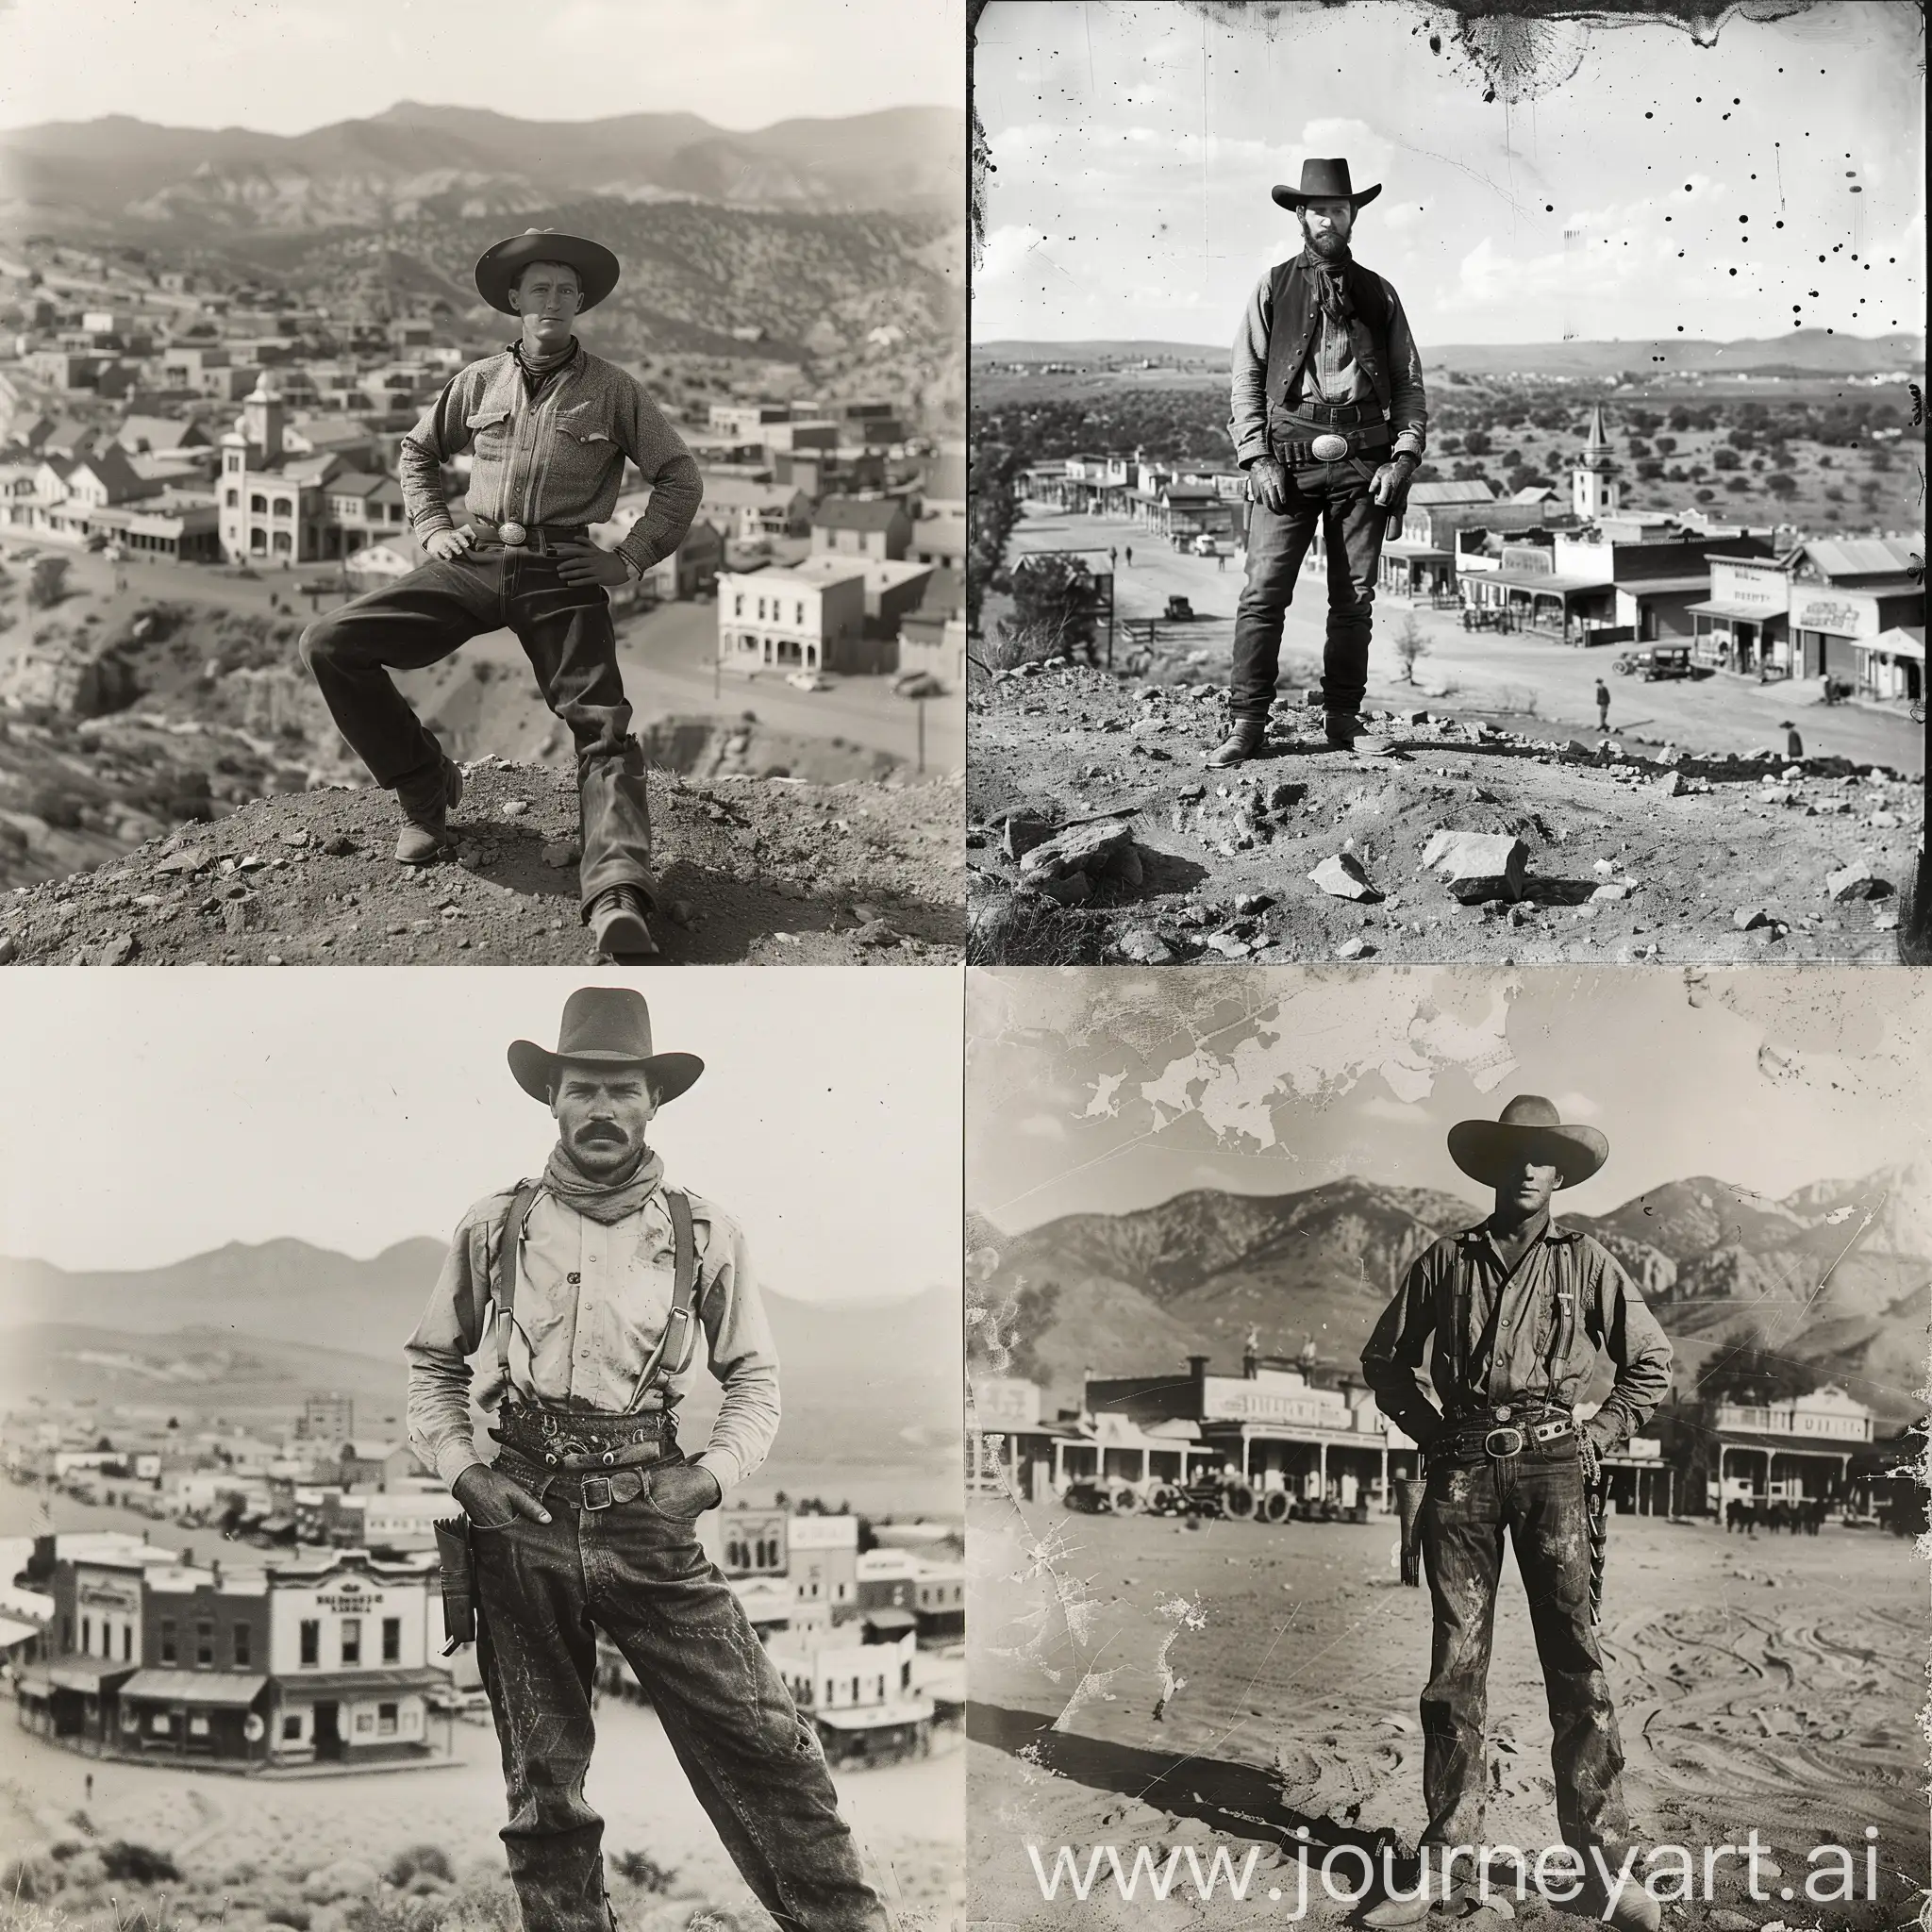 Vintage-Cowboy-Portrait-in-Wild-West-Town